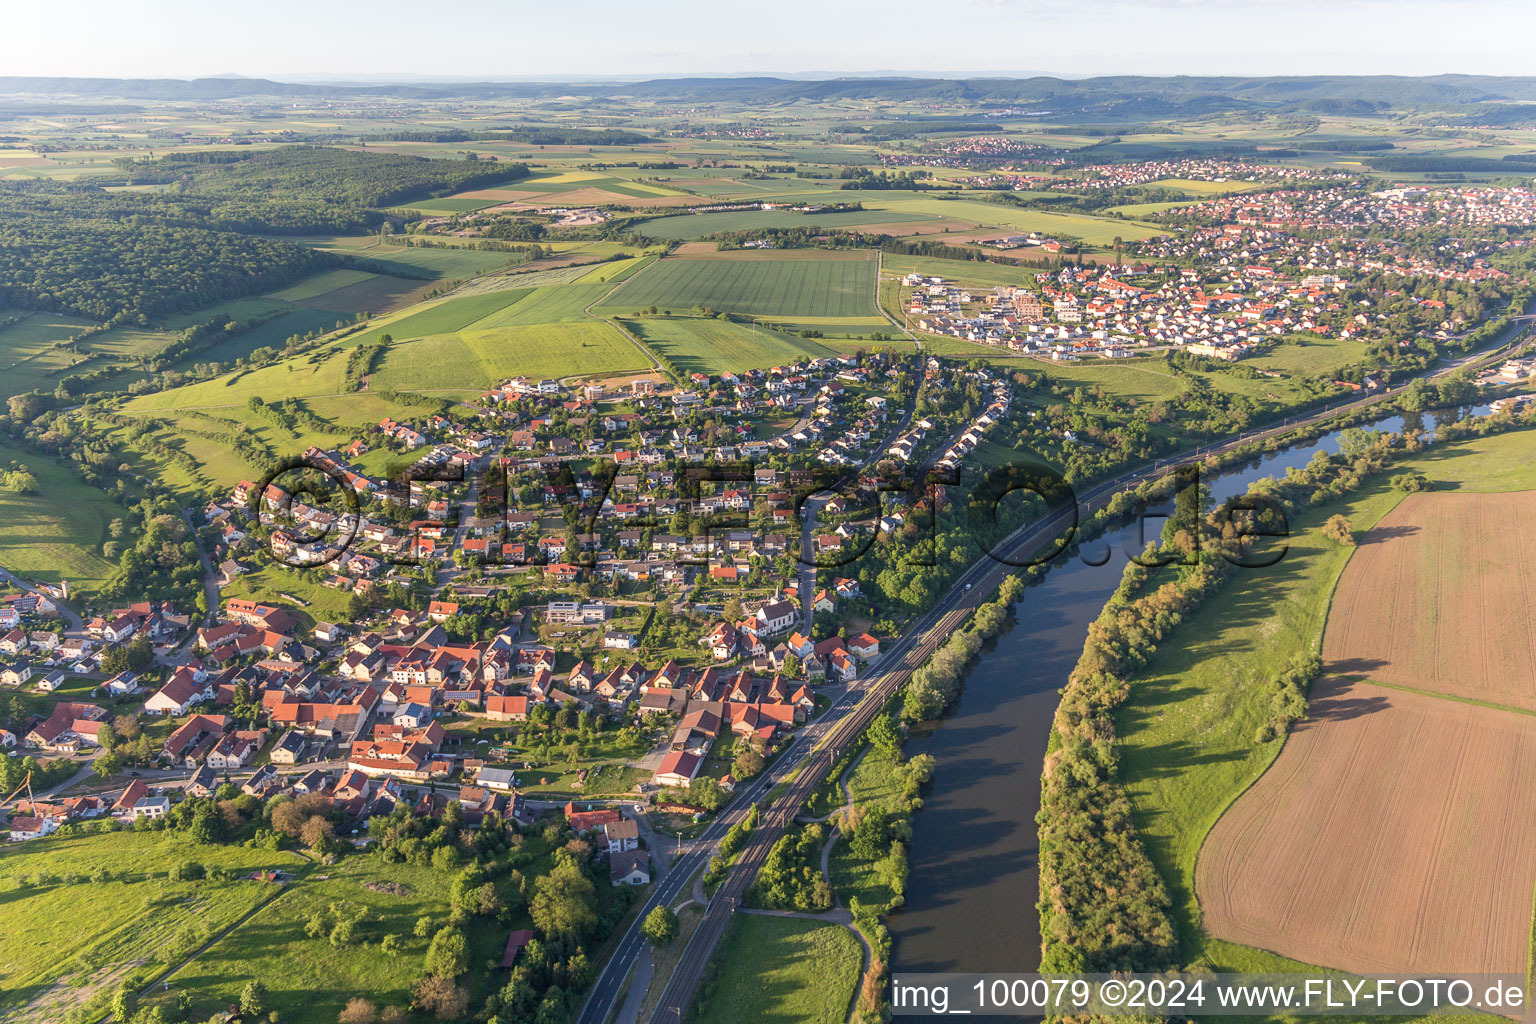 Luftbild von Dorfkern an den Fluß- Uferbereichen des Main in Wülflingen im Bundesland Bayern, Deutschland